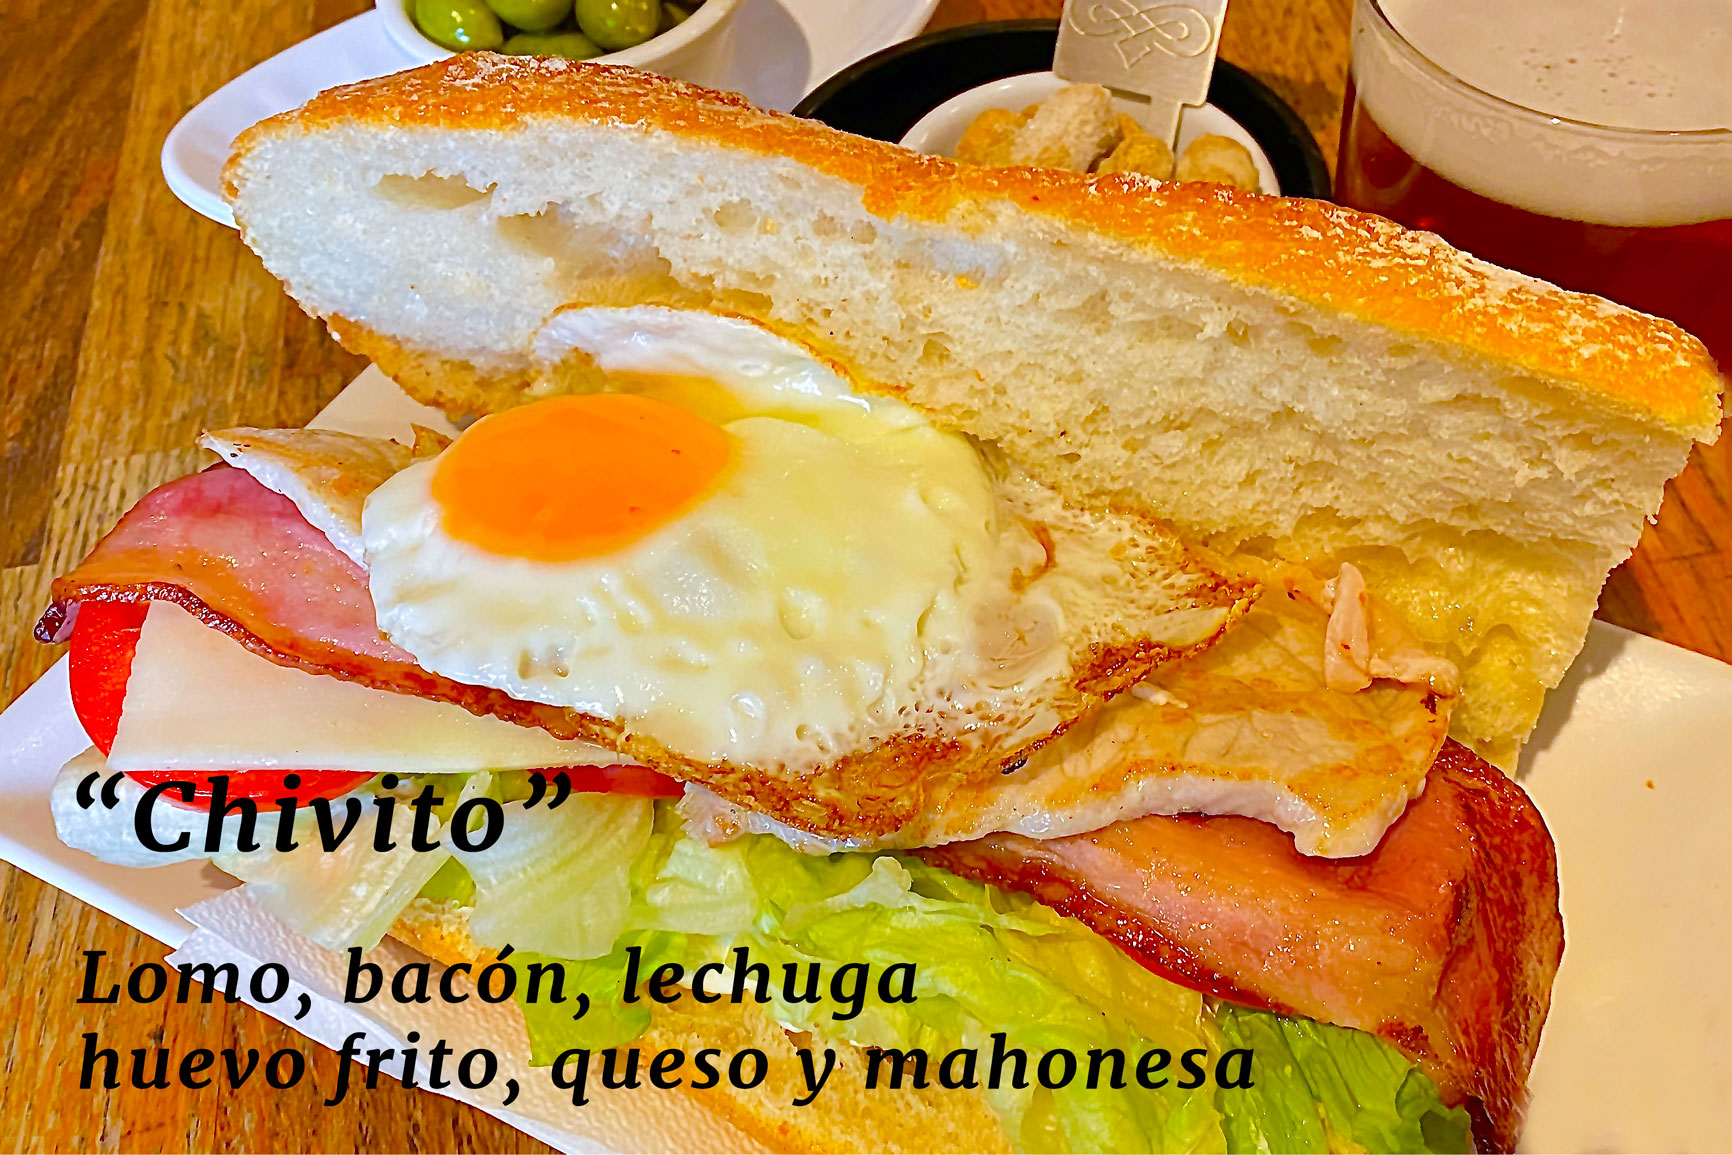 "Chivito" - Lomo, bacón, lechuga huevo frito, queso y mahonesa